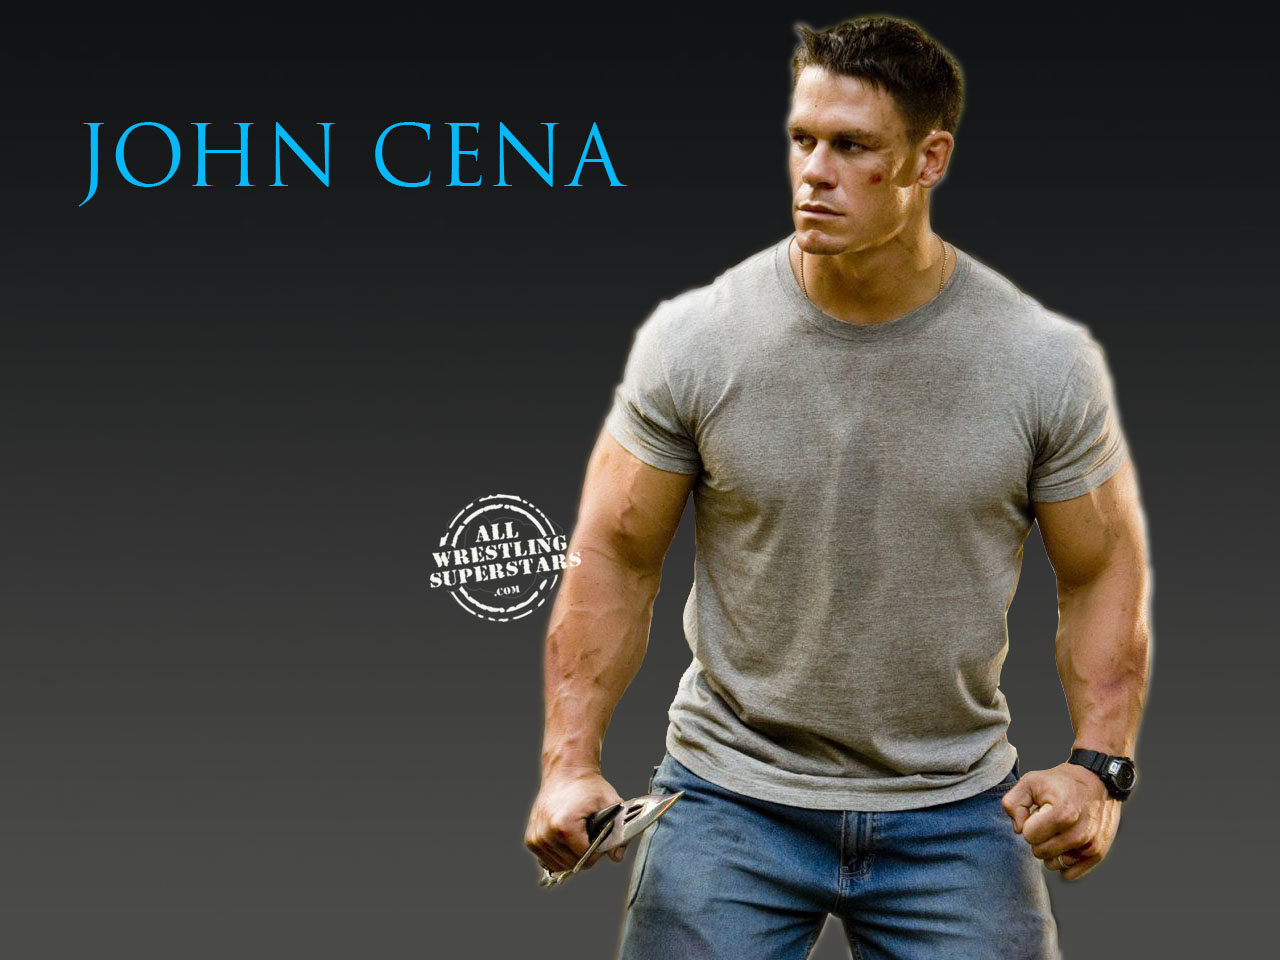 Url Allwrestlingsuperstars Wwe John Cena Wallpaper